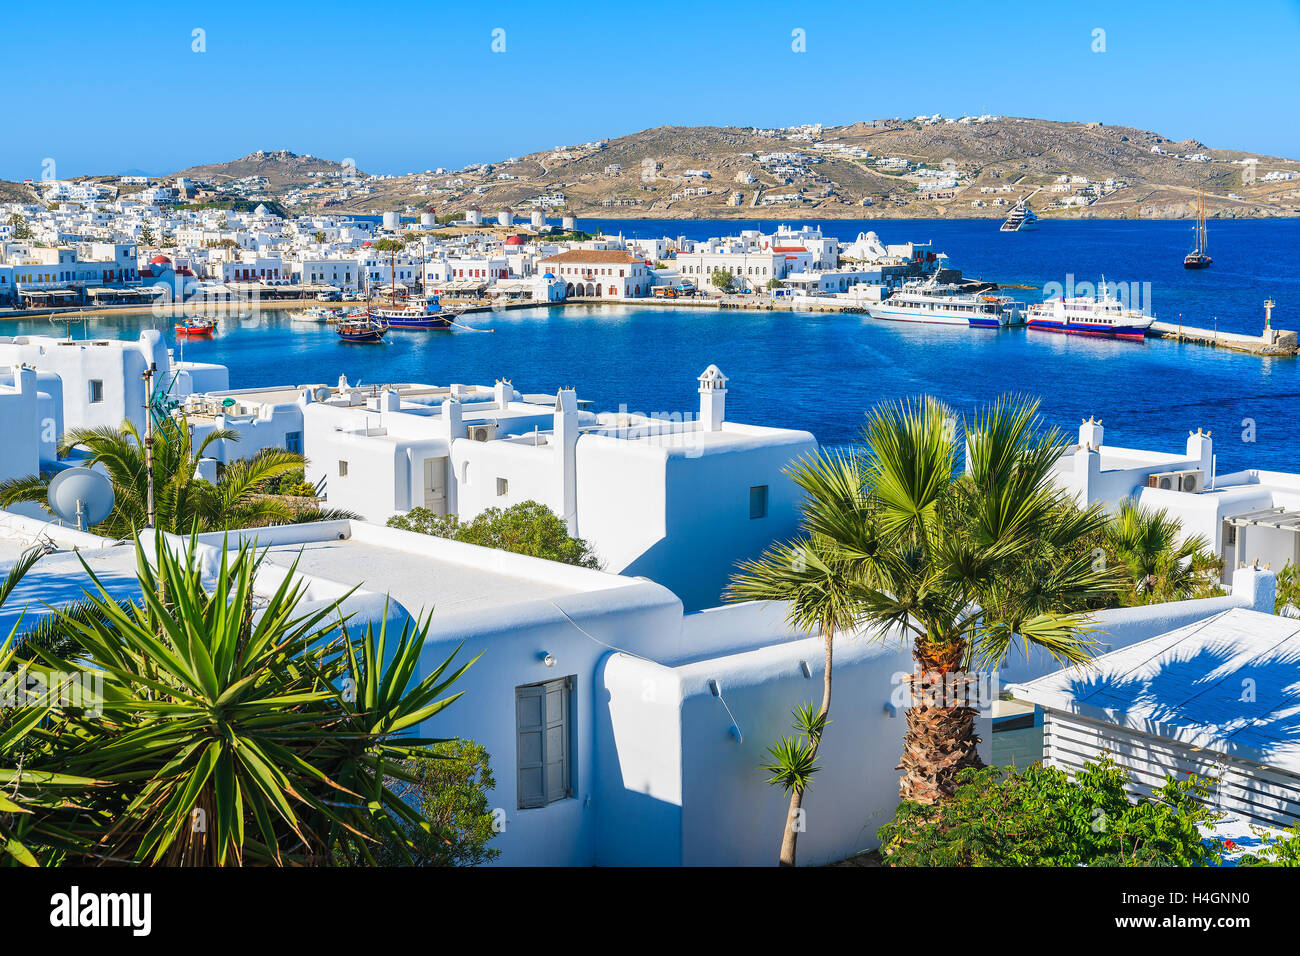 Una vista del porto di Mykonos e città, isola di Mykonos cicladi grecia Foto Stock